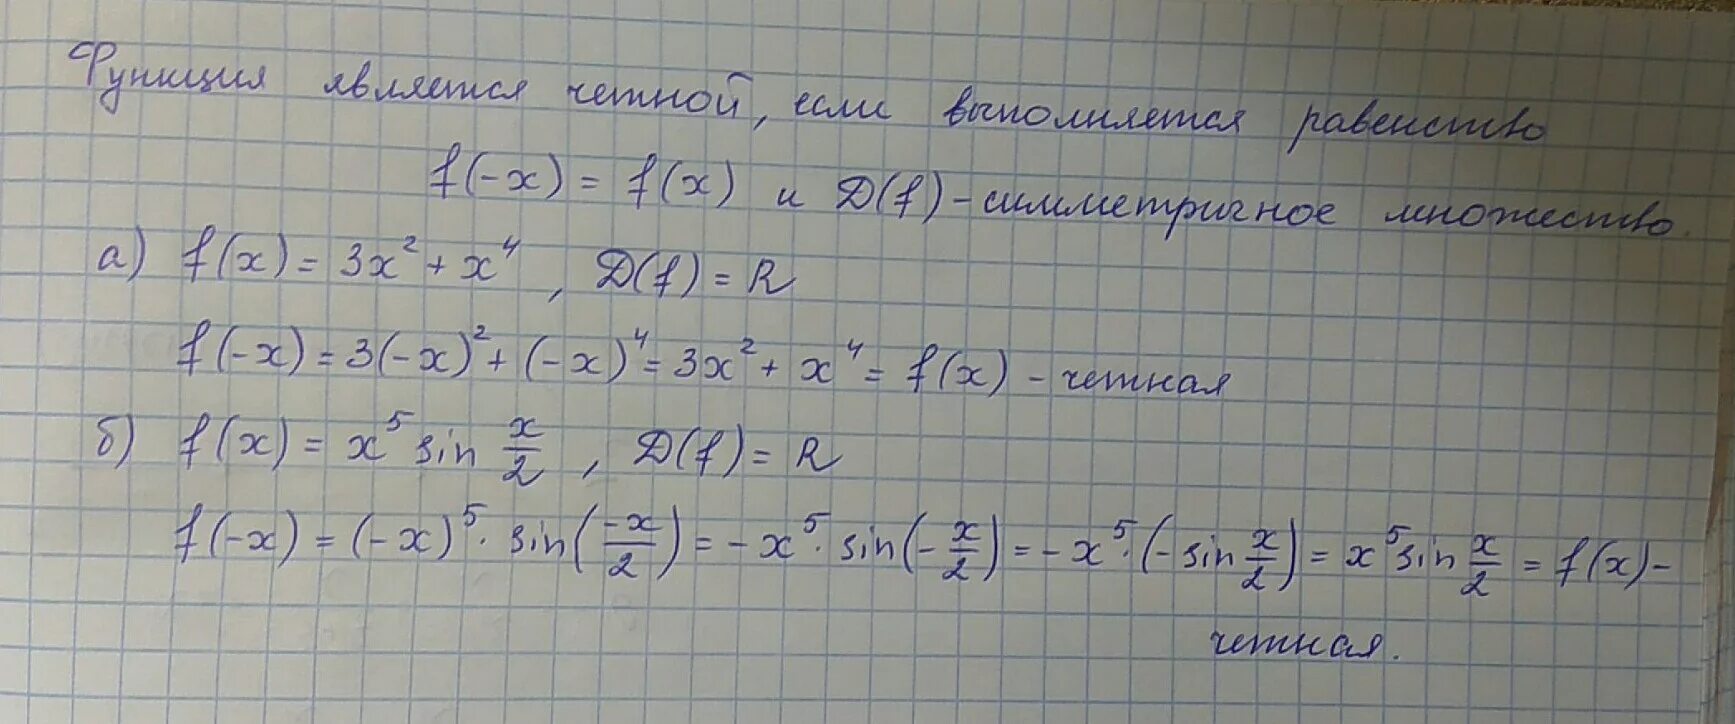 2x 7 4x 3 18 x. F(x1,x2,x3) функция. Решение f(x)=2x+x^2. Функция f(x) = x2+5x+6. F(X)=2x^3+x^2-3x+3.